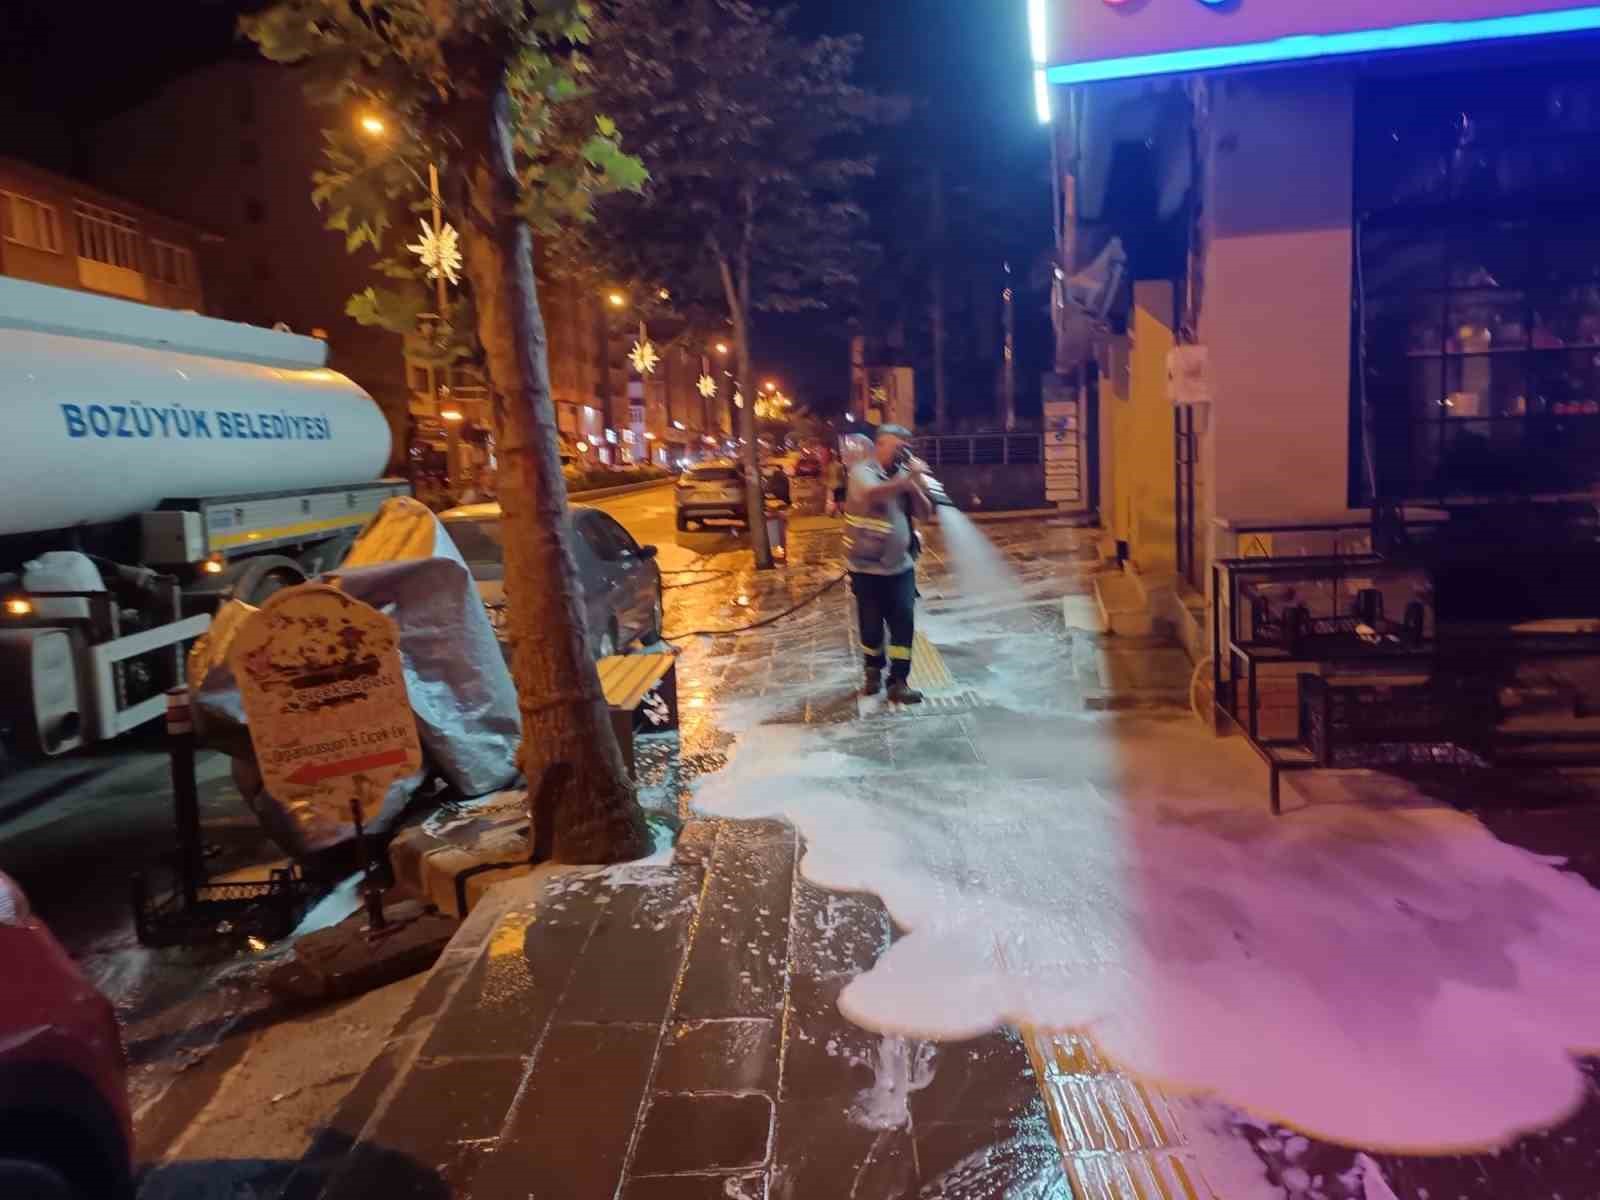 Bozüyük’te ana cadde kaldırımları köpüklü yıkama ile temizleniyor